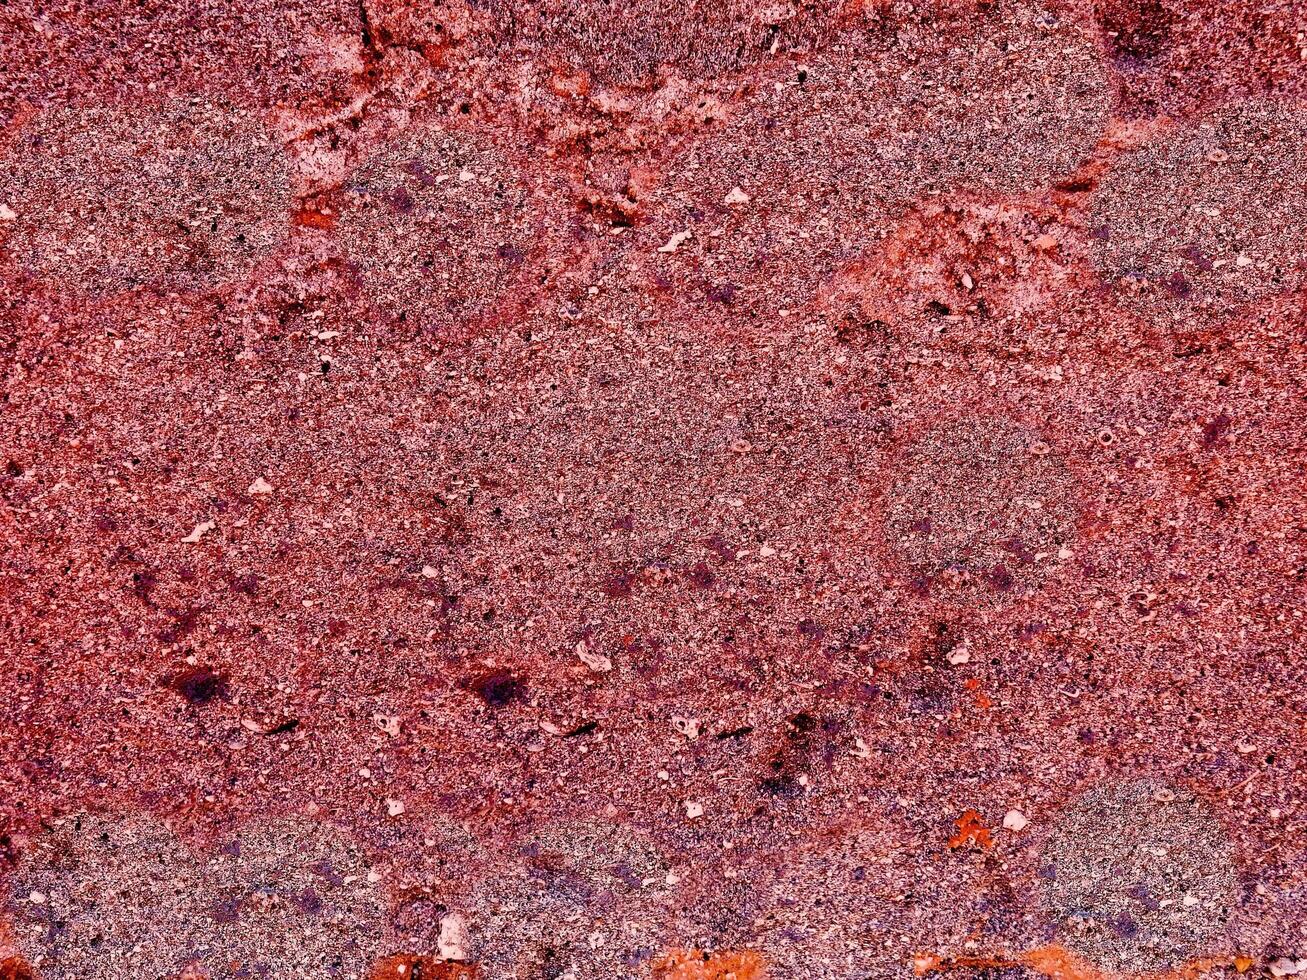 textur av röd sten i trädgården foto